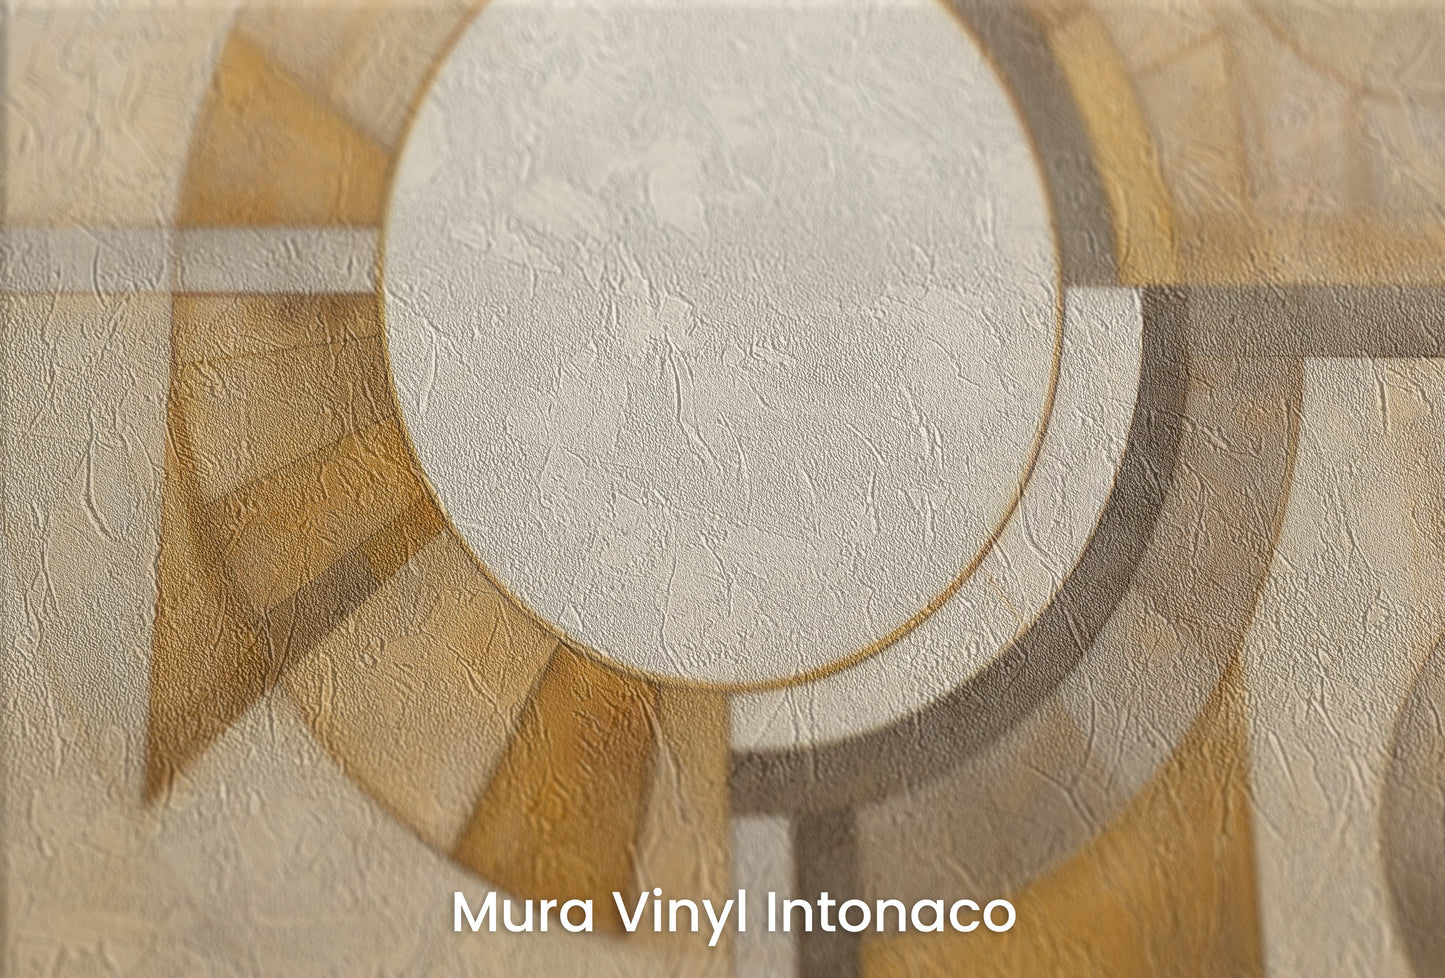 Zbliżenie na artystyczną fototapetę o nazwie ASTRAL CIRCULARITY na podłożu Mura Vinyl Intonaco - struktura tartego tynku.